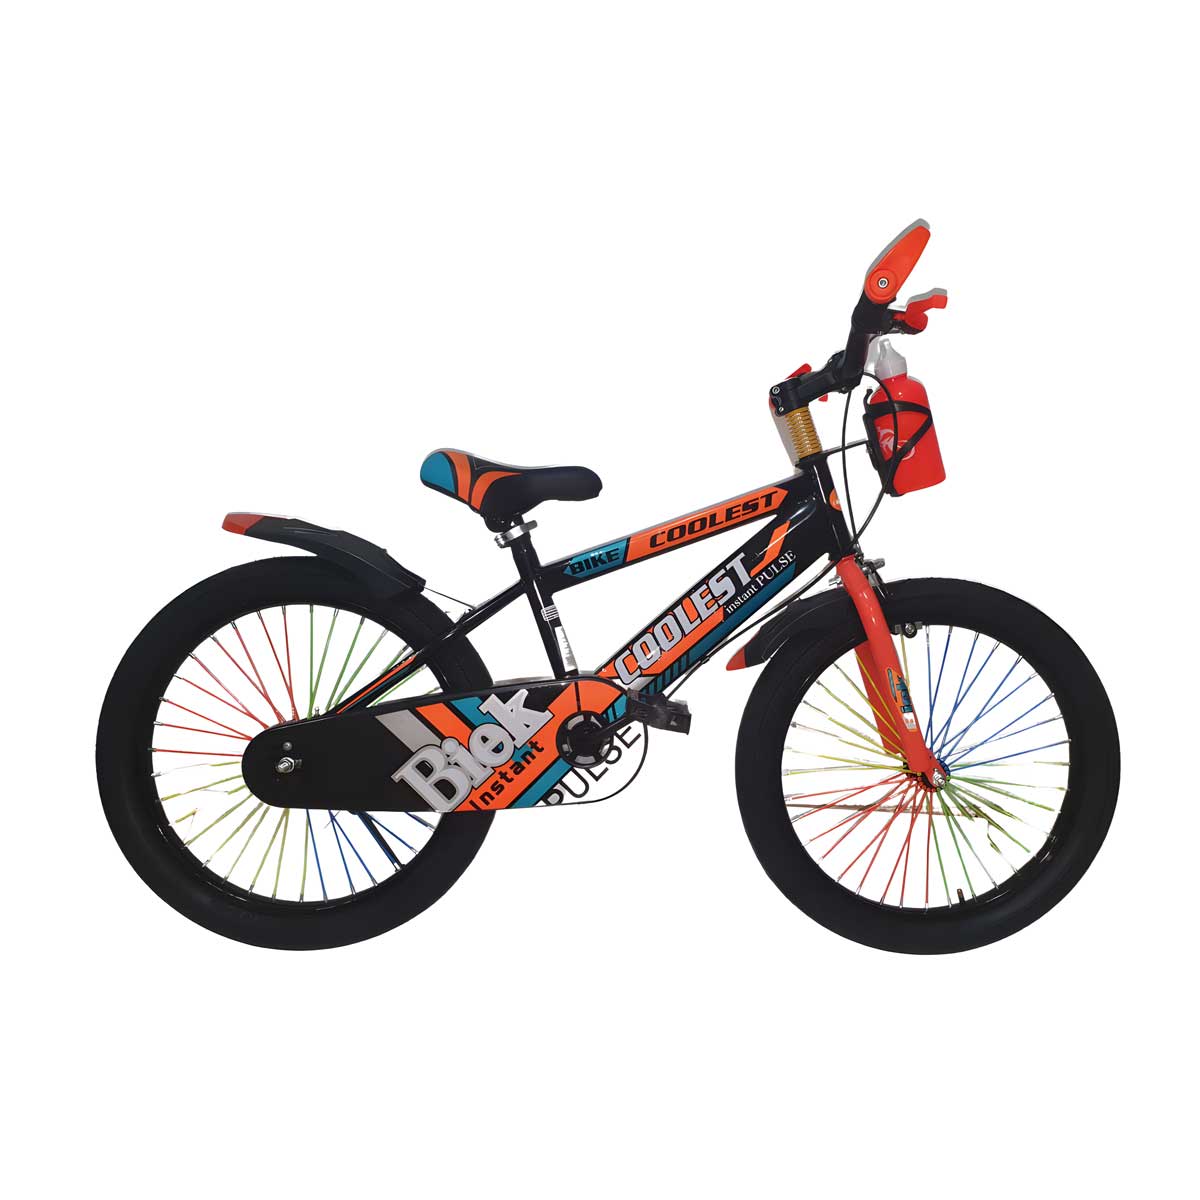 Bicicleta Coolest Instant Pulse Rin 20 con vibrantes colores negro, naranja y azul, equipada con cubre lodo y frenos de aro, perfecta para las aventuras de niños y niñas